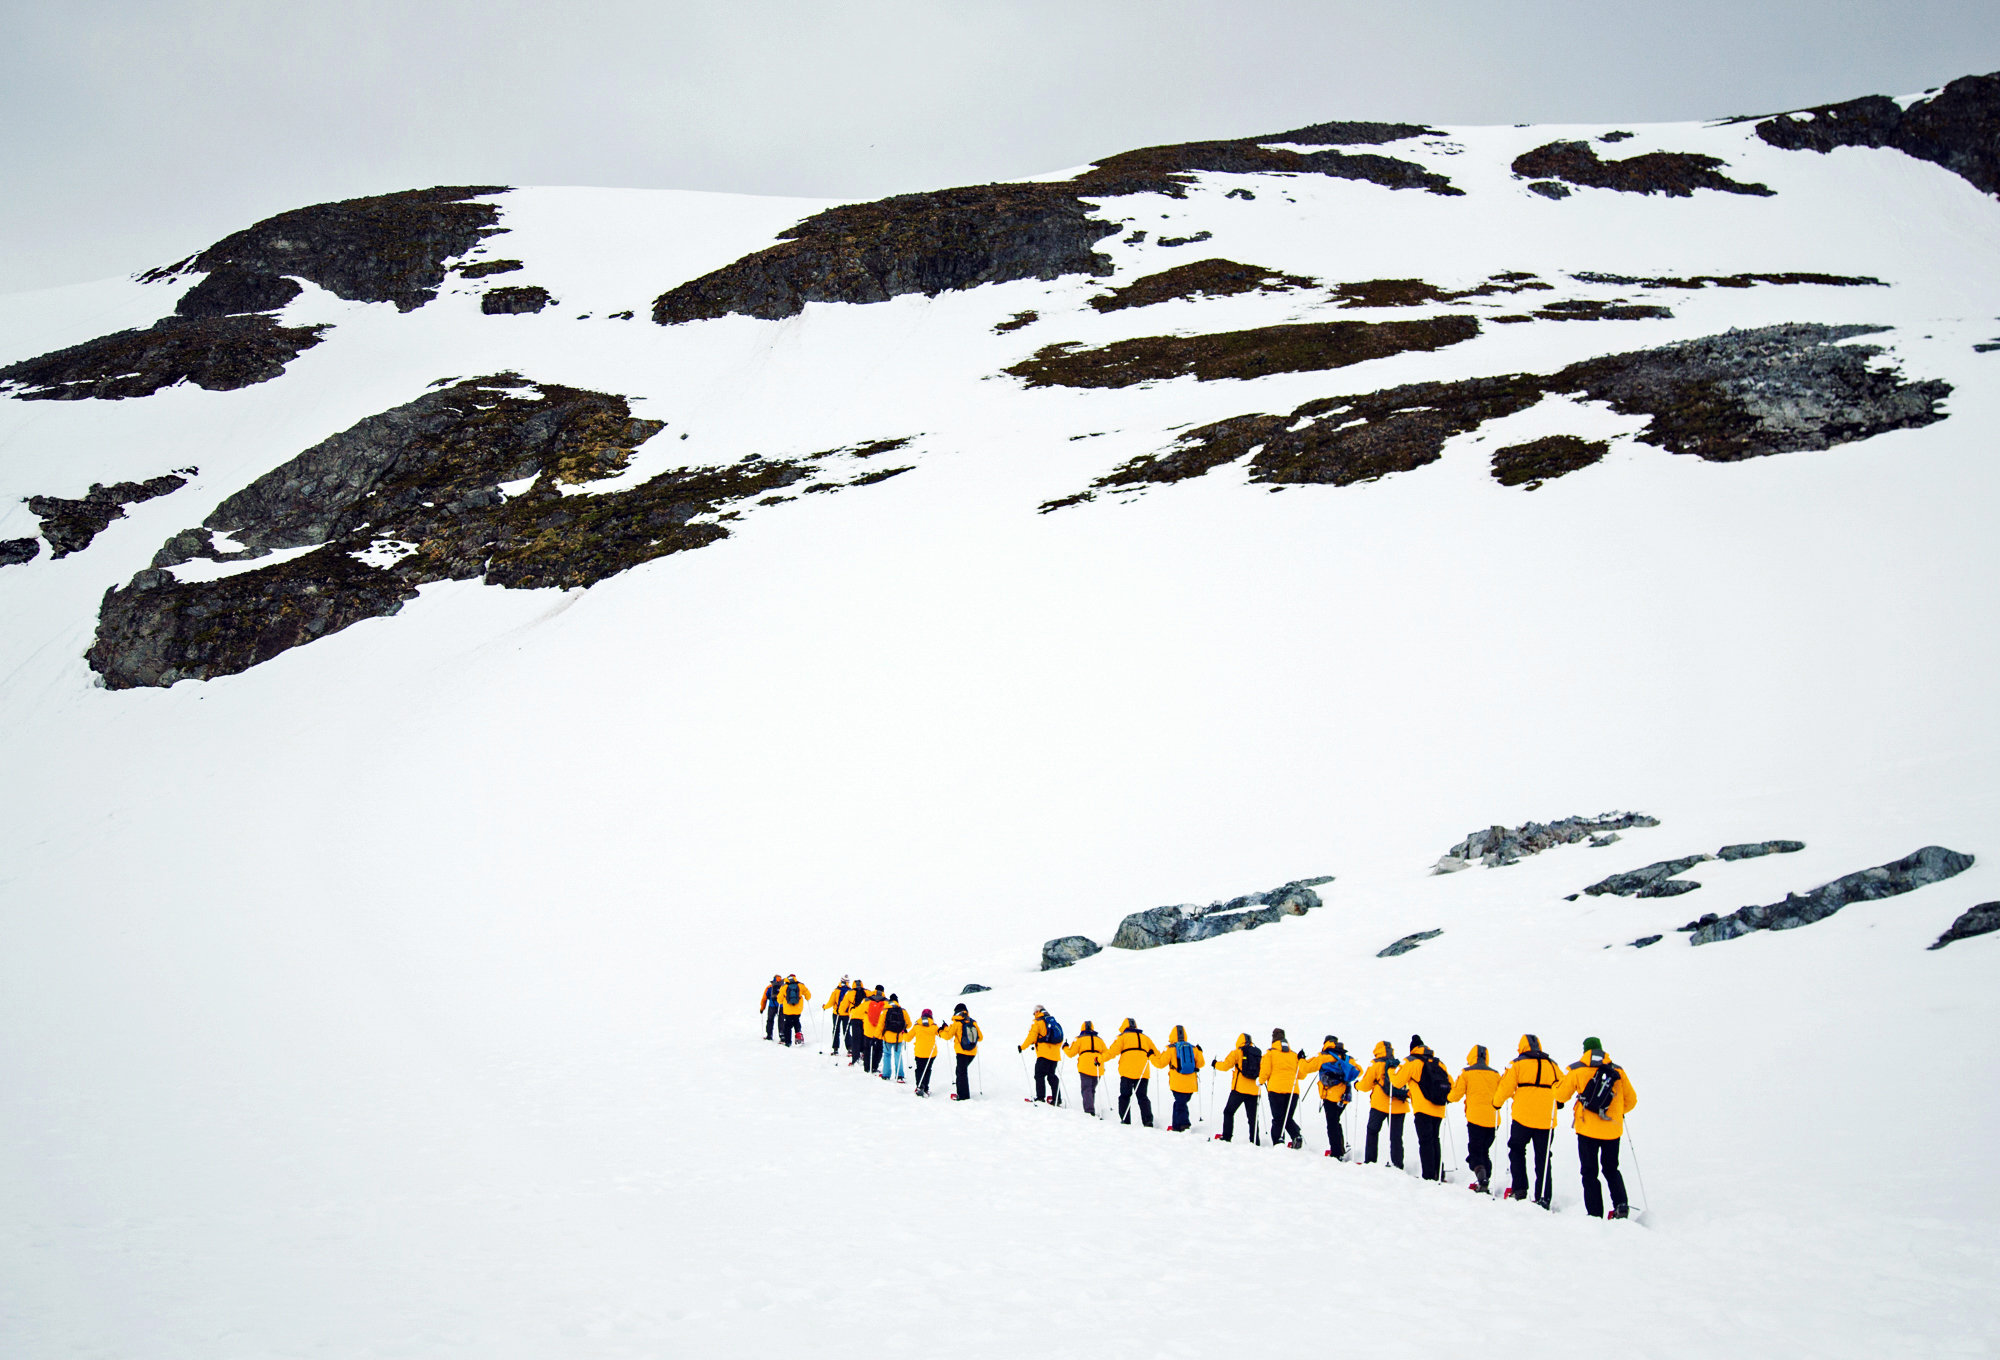 Quark Passenger Snowshoeing in Antarctica. Photo: Acacia Johnson